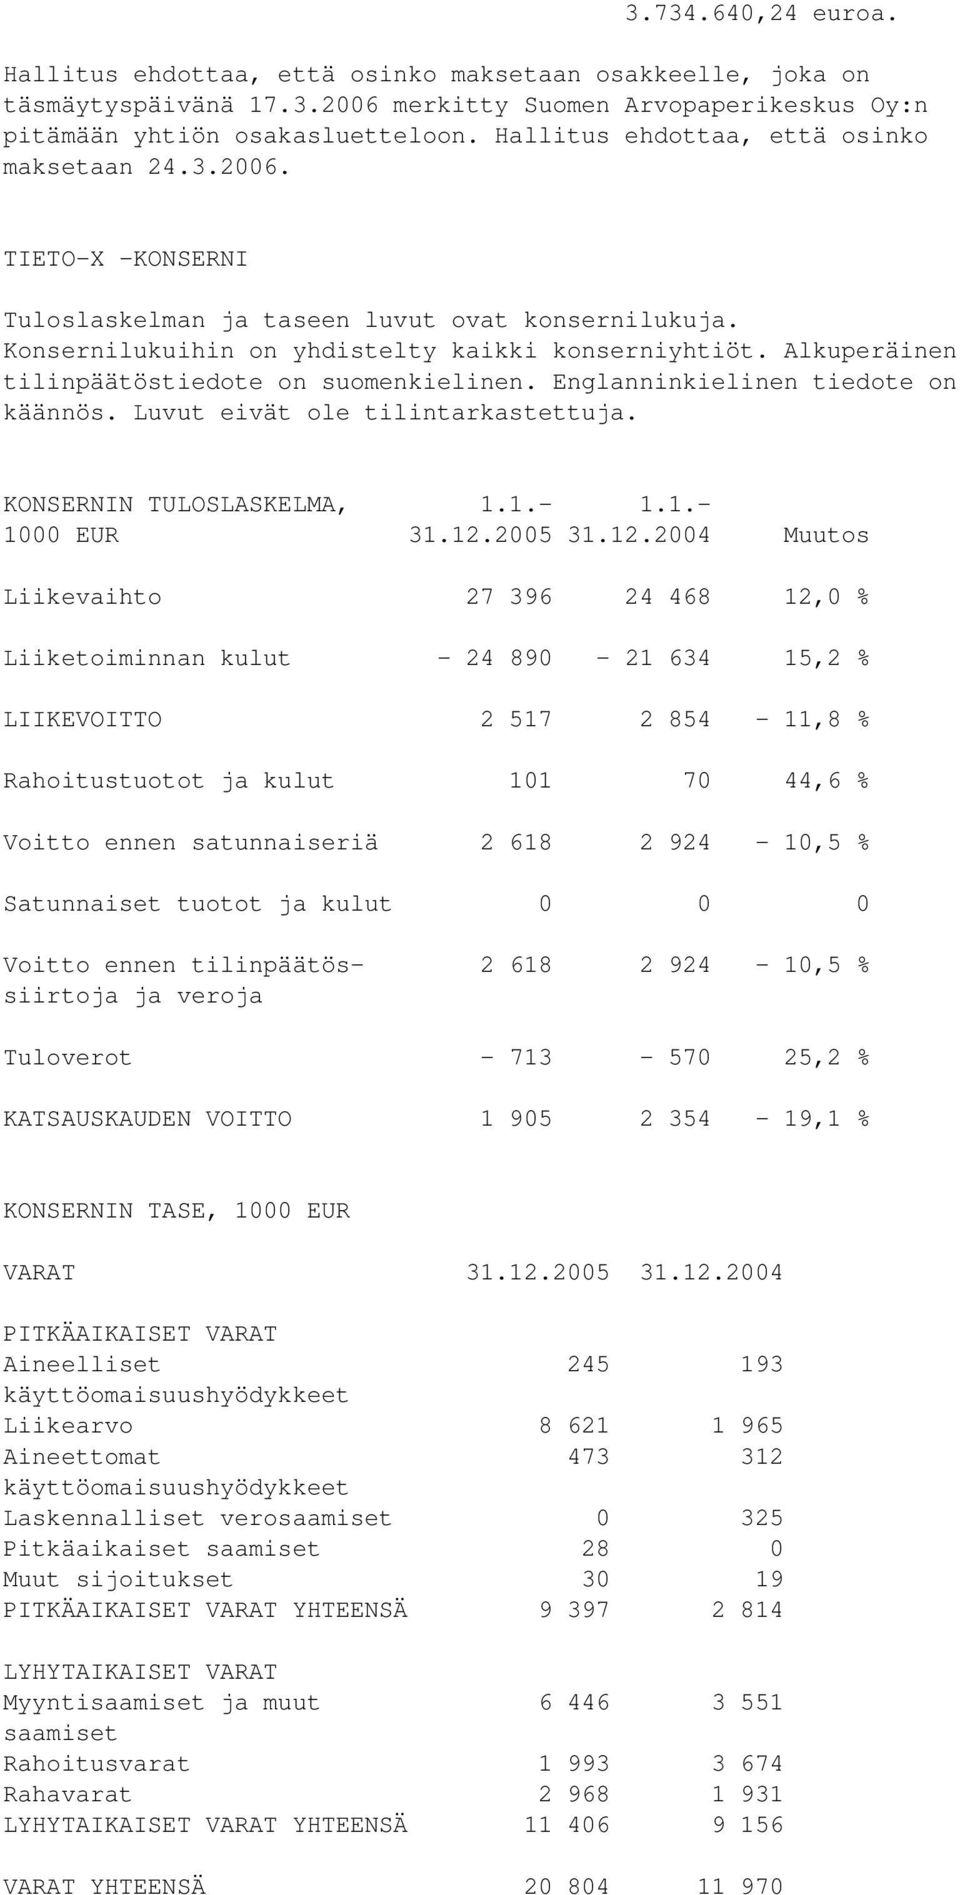 Alkuperäinen tilinpäätöstiedote on suomenkielinen. Englanninkielinen tiedote on käännös. Luvut eivät ole tilintarkastettuja. KONSERNIN TULOSLASKELMA, 1.1.- 1.1.- 1000 EUR 31.12.